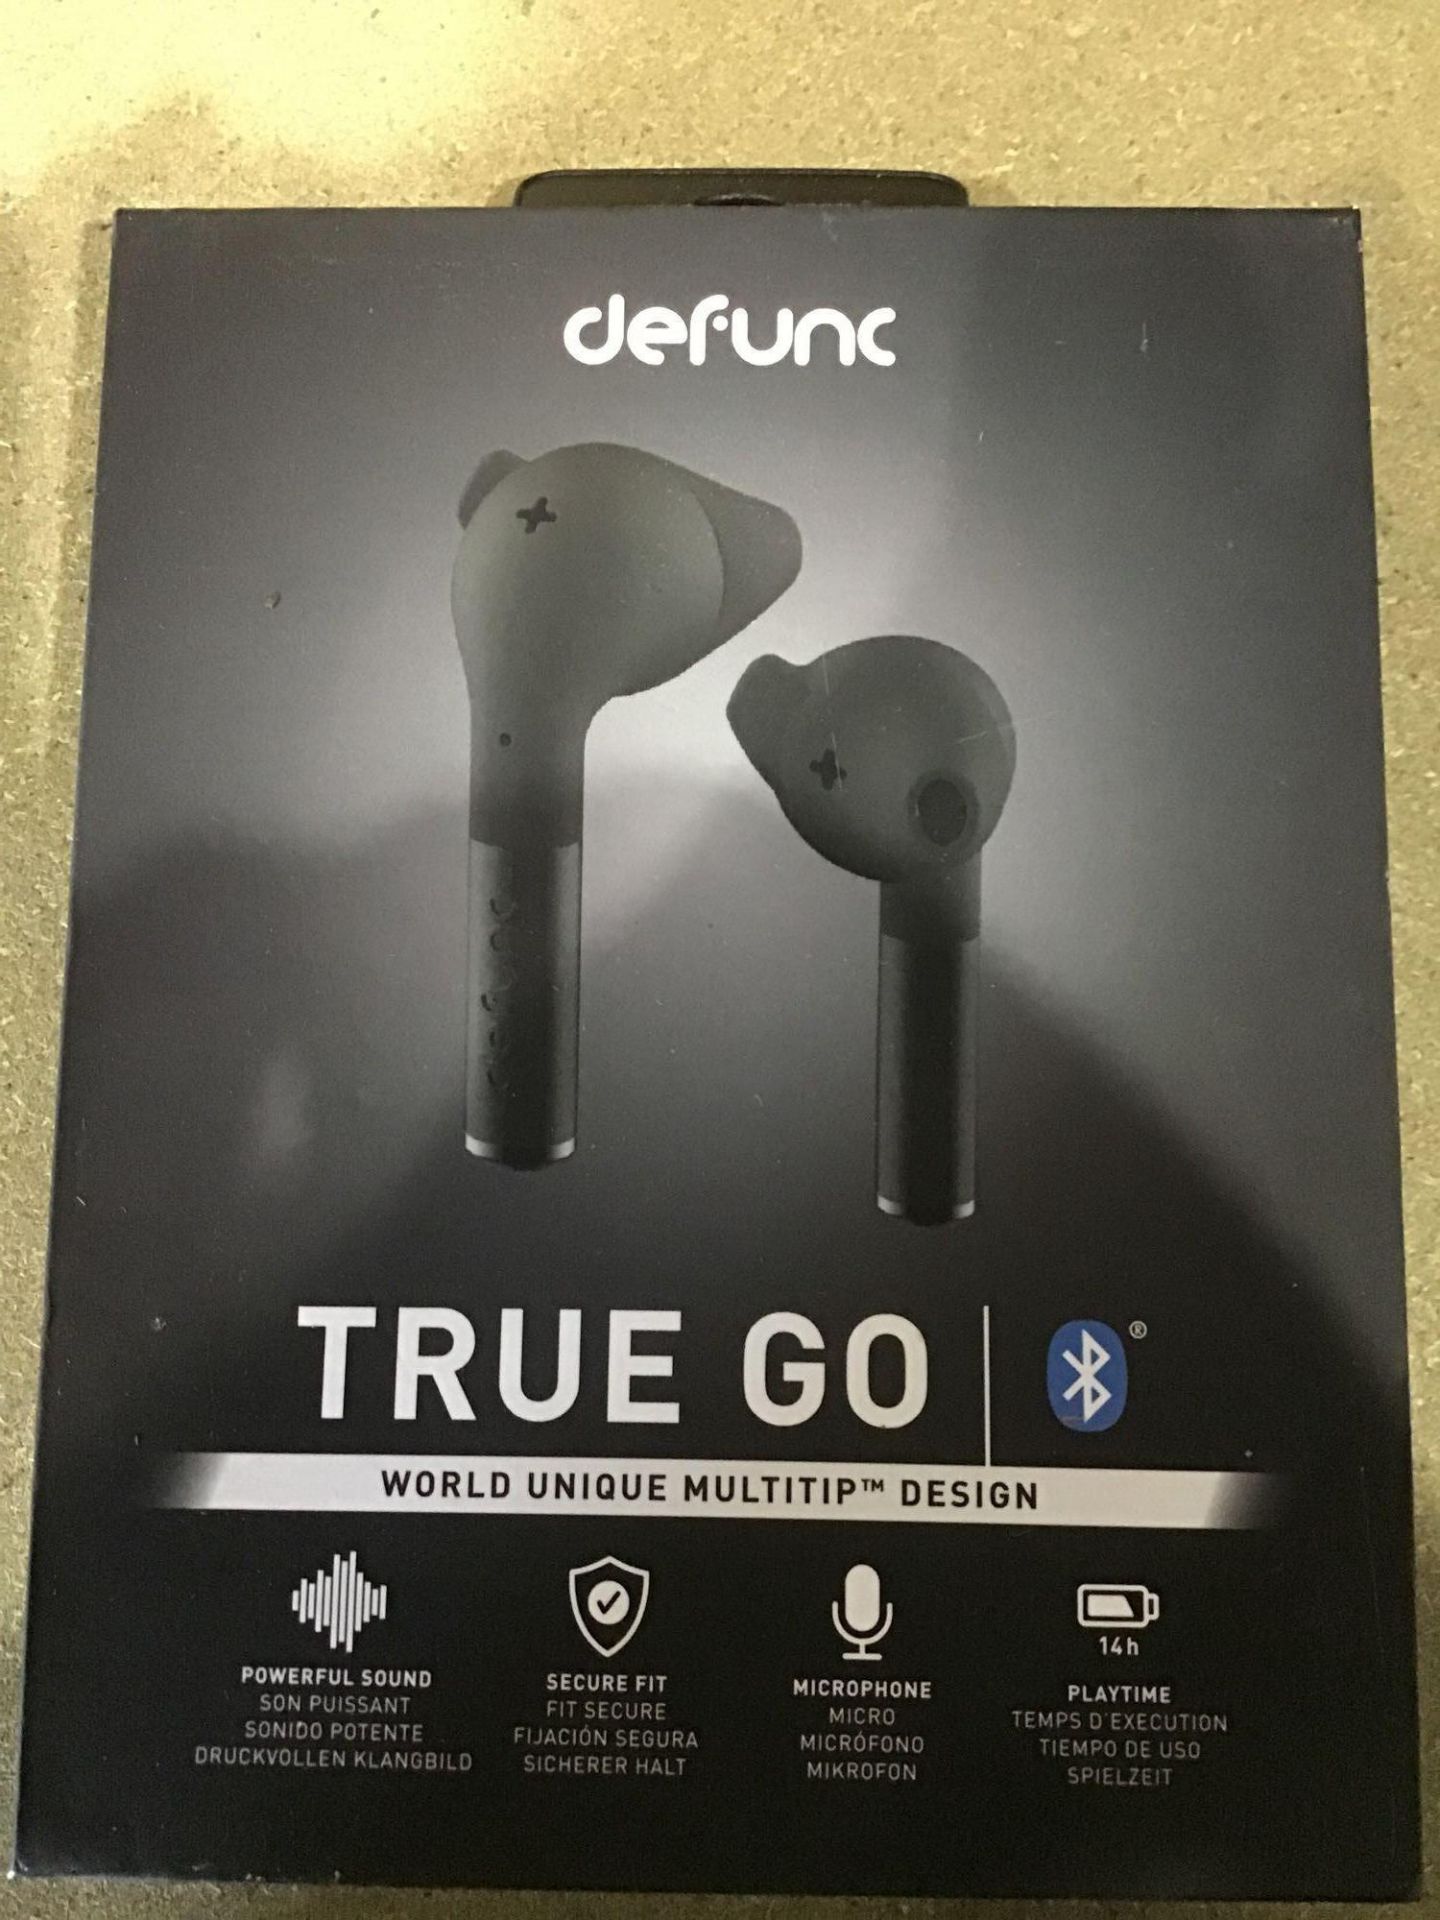 Defunc True Go Wireless Earphones with Dual Mic's-Type C Charging-5.0 Bluetooth Headphones - Image 3 of 5